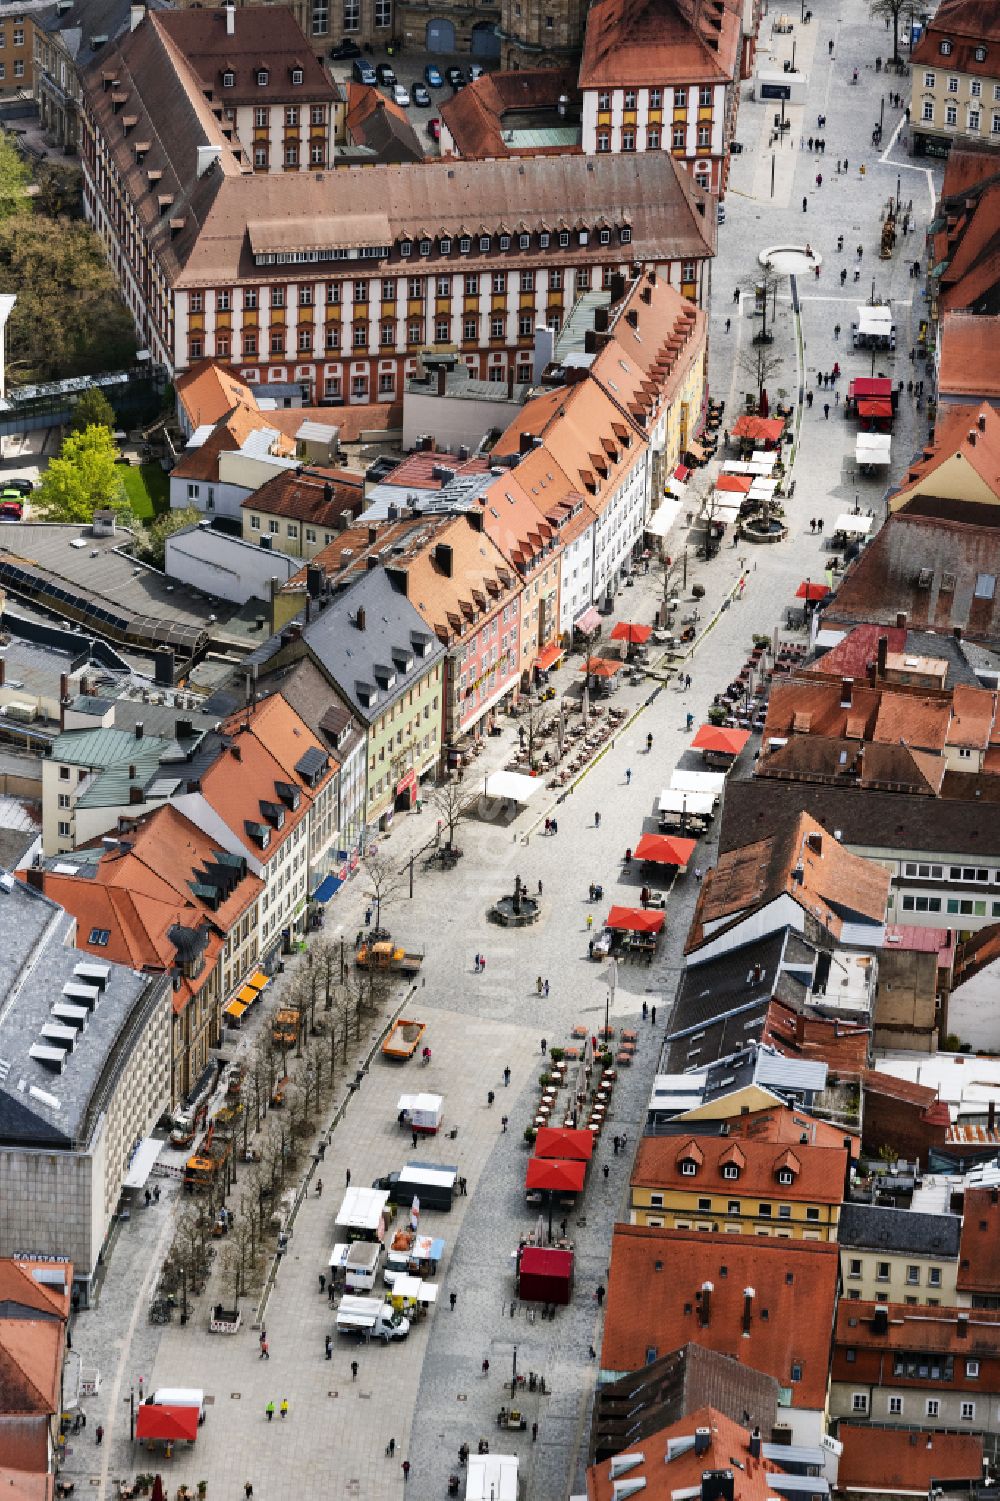 Luftaufnahme Bayreuth - Altstadtbereich und Innenstadtzentrum in Bayreuth im Bundesland Bayern, Deutschland